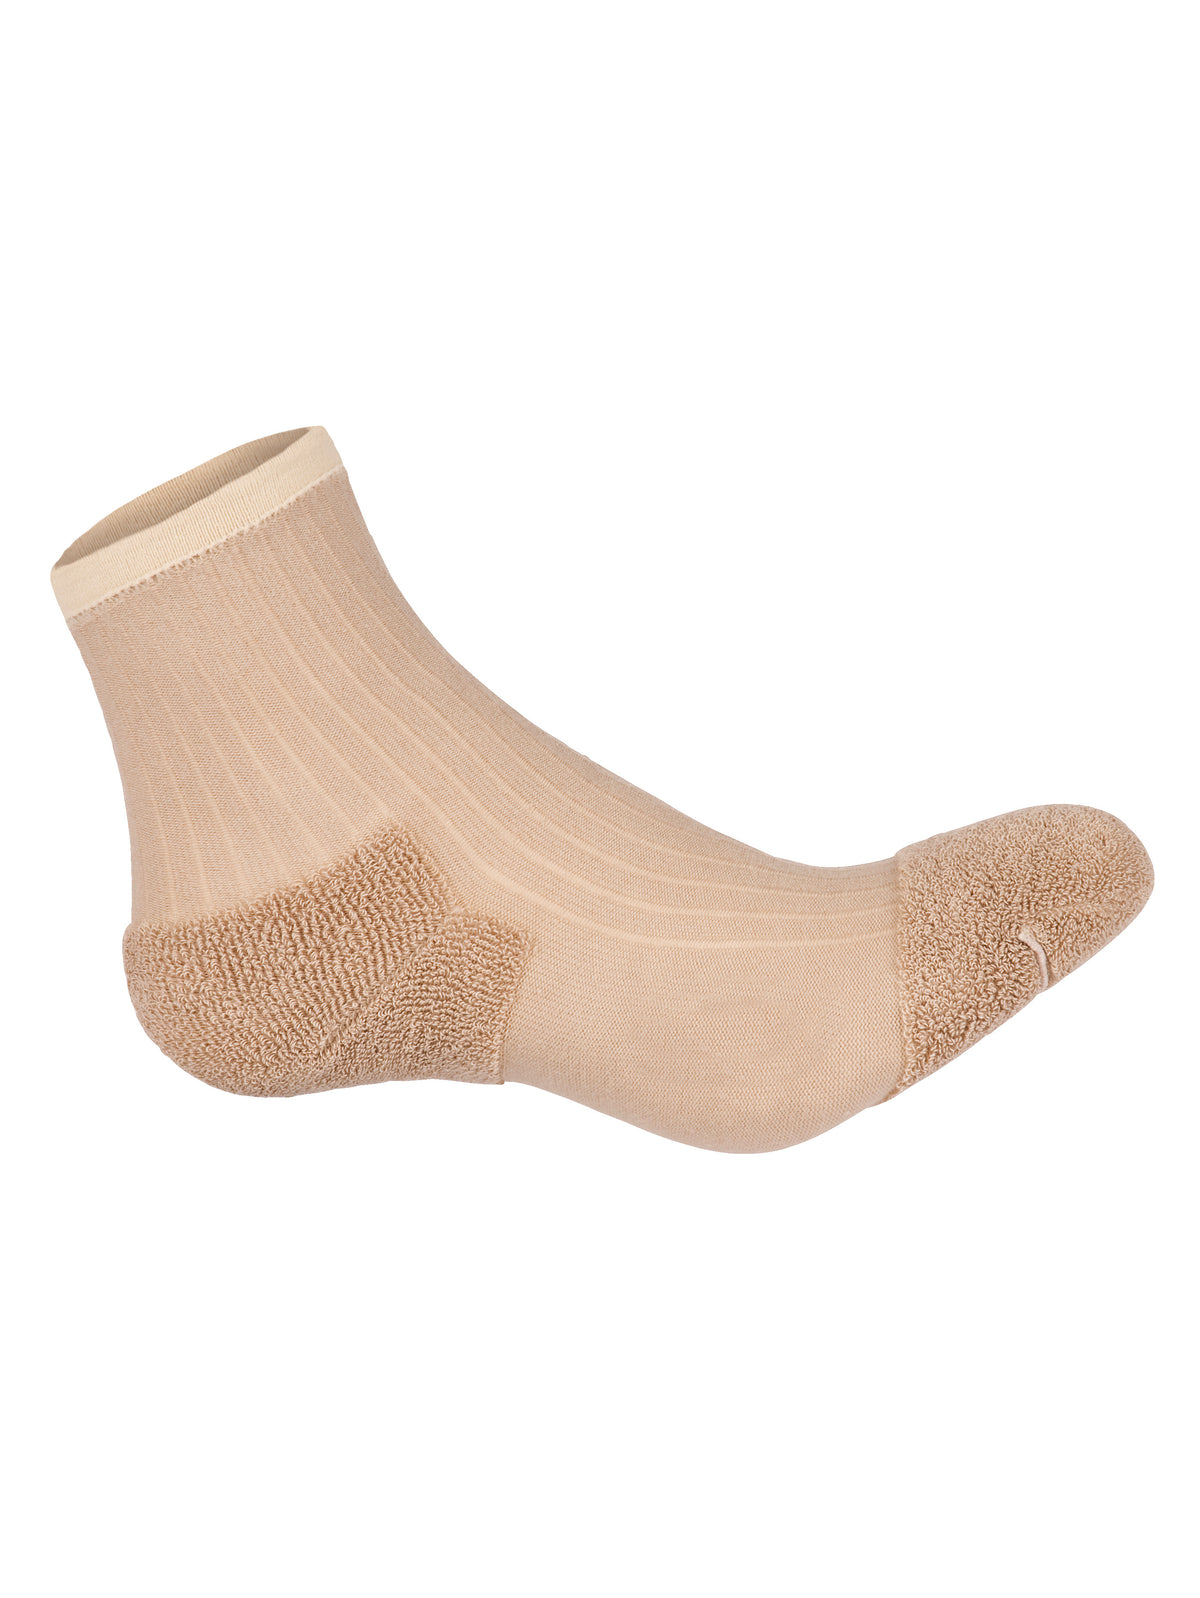 Sensitiv Socken, 1 Paar